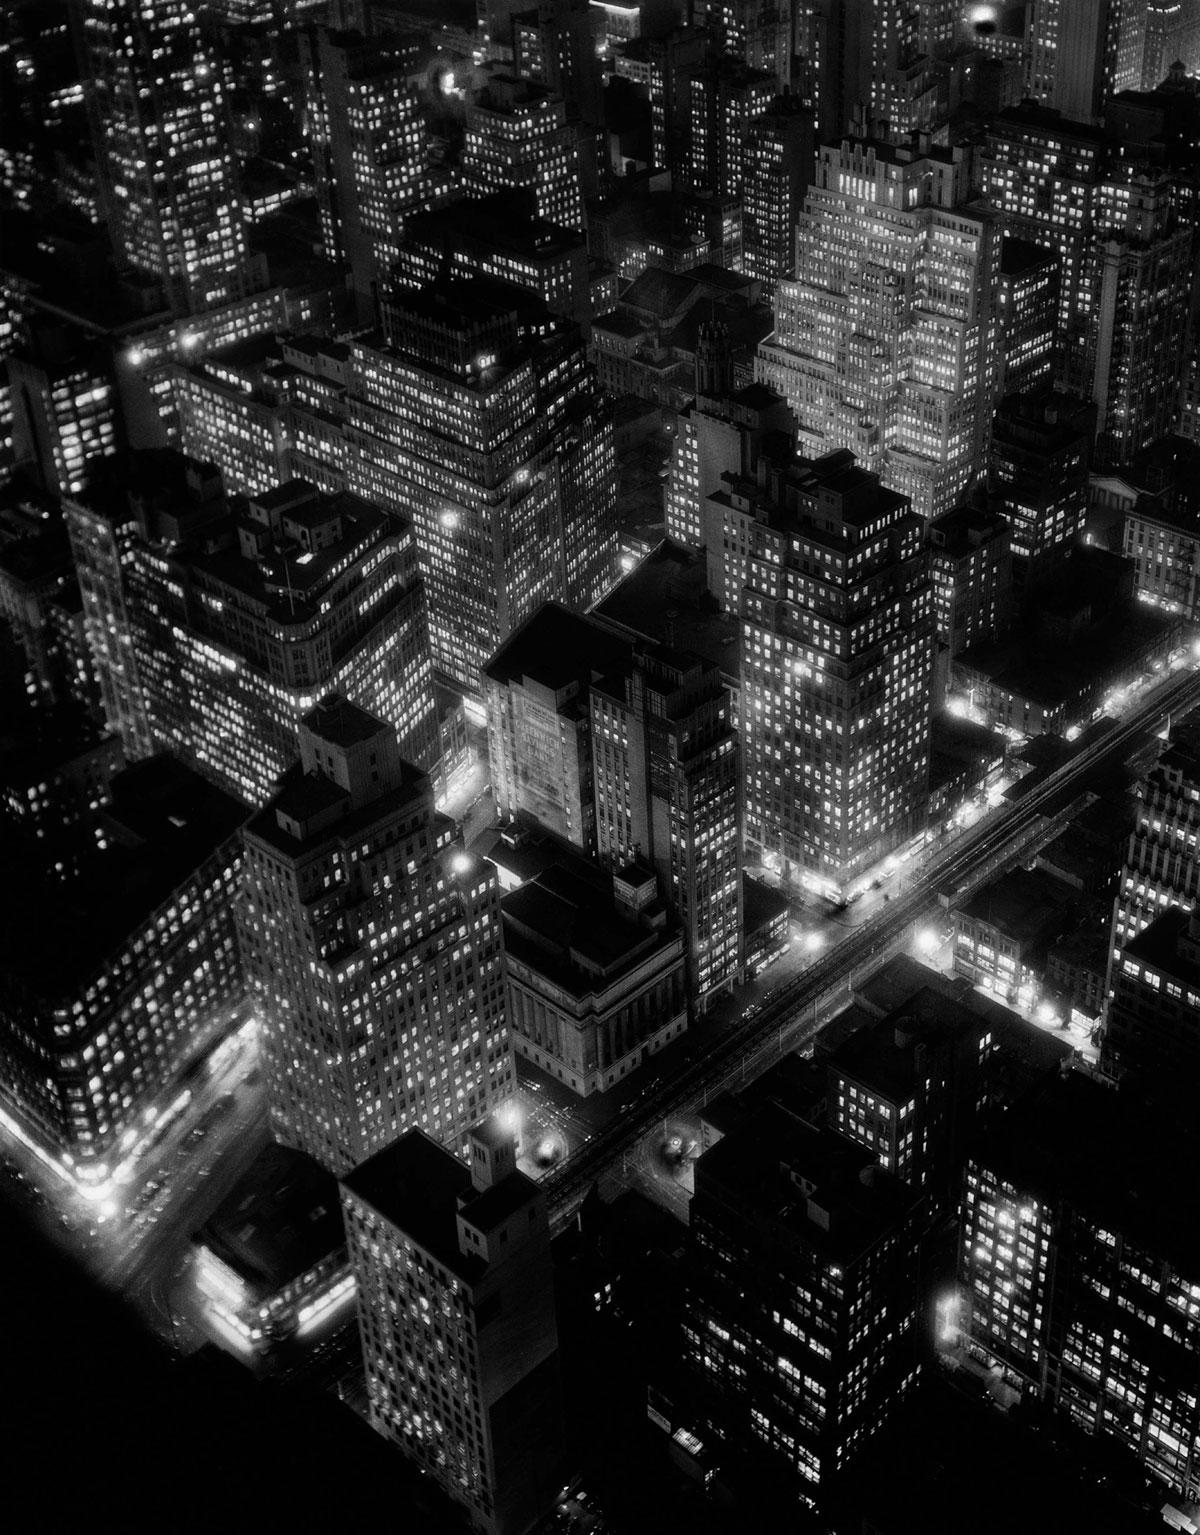 Nightview, New York City (1932) by Berenice Abbott.